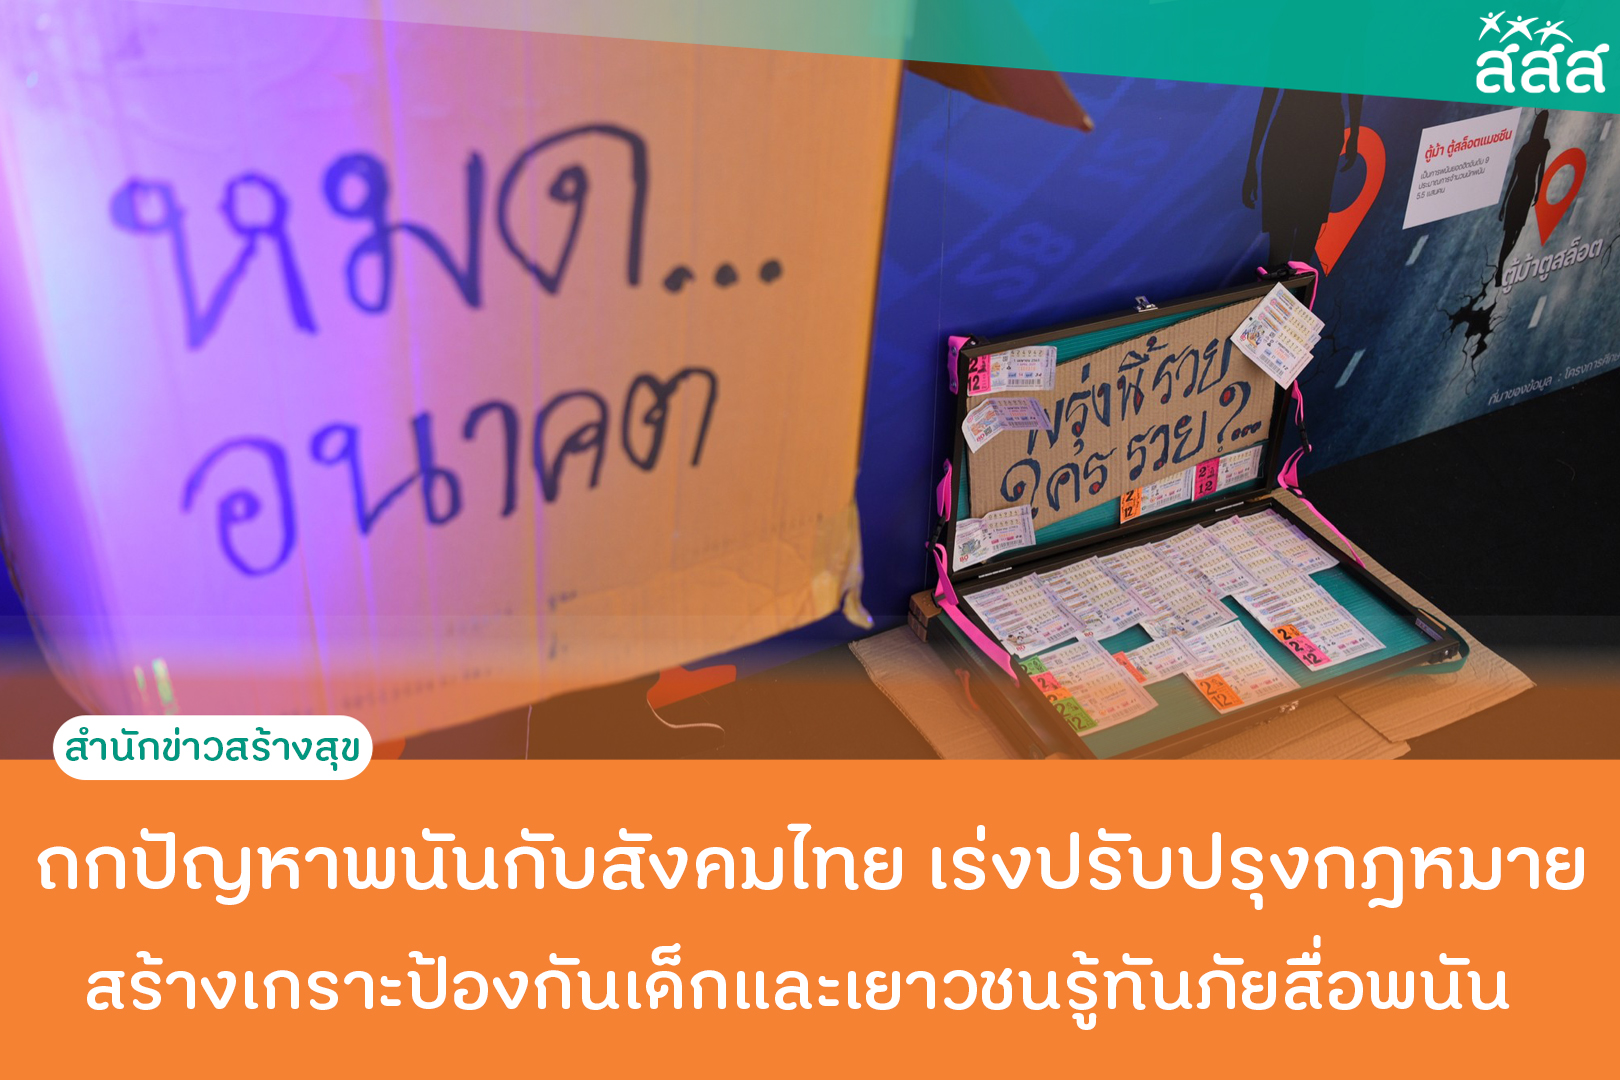 ถกปัญหาพนันกับสังคมไทย เร่งปรับปรุงกฎหมาย สร้างเกราะป้องกันเด็กและเยาวชนรู้ทันภัยสื่อพนัน thaihealth